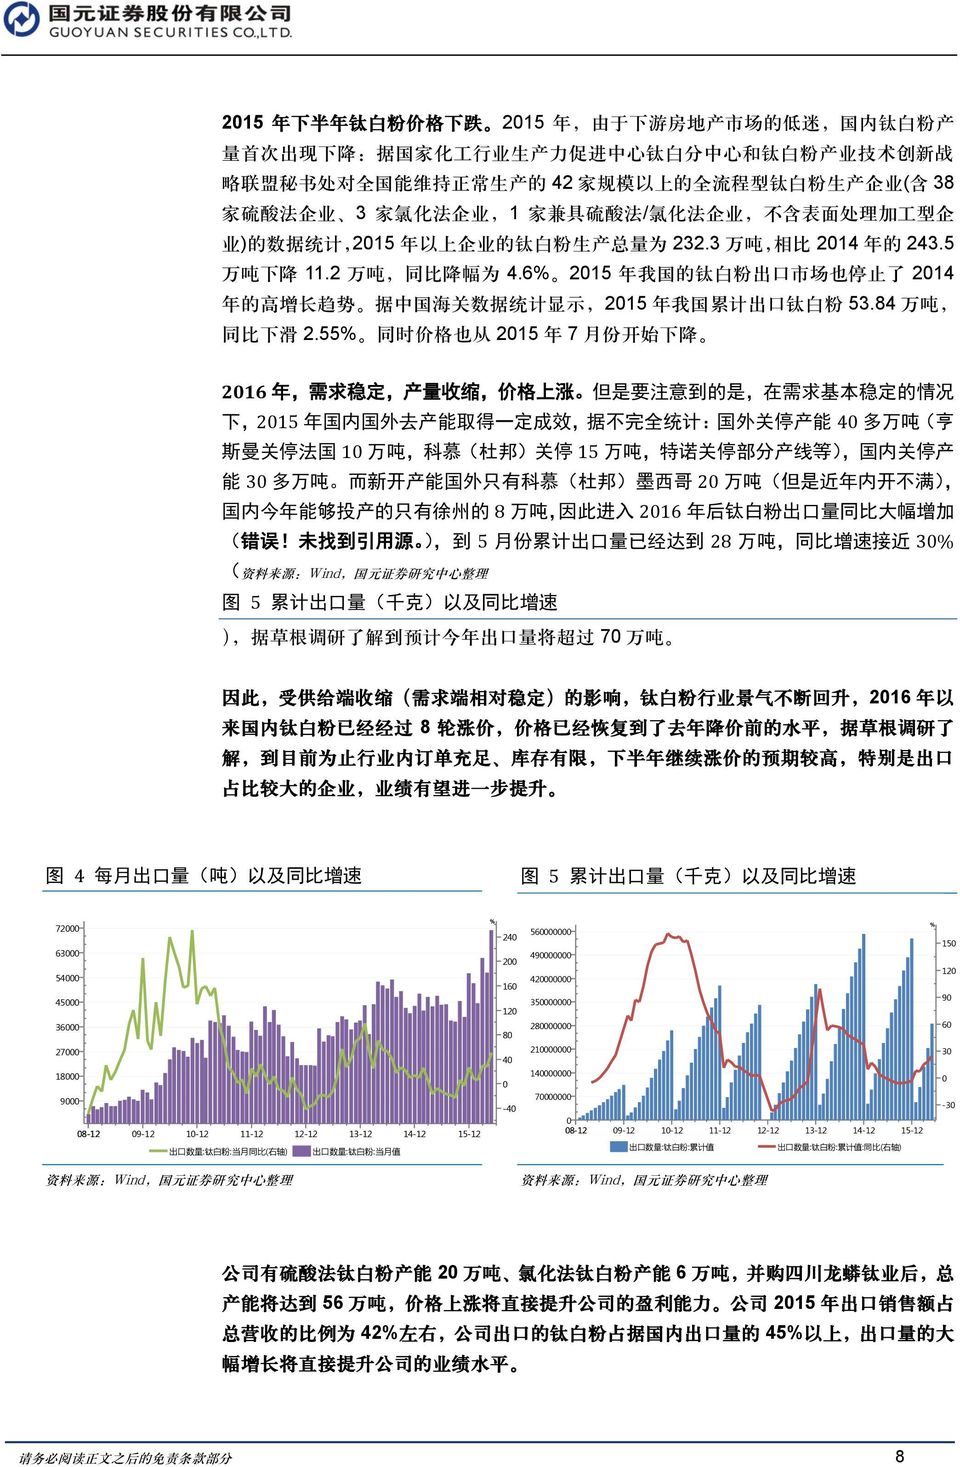 2 万 吨, 同 比 降 幅 为 4.6% 2015 年 我 国 的 钛 白 粉 出 口 市 场 也 停 止 了 2014 年 的 高 增 长 趋 势 据 中 国 海 关 数 据 统 计 显 示,2015 年 我 国 累 计 出 口 钛 白 粉 53.84 万 吨, 同 比 下 滑 2.